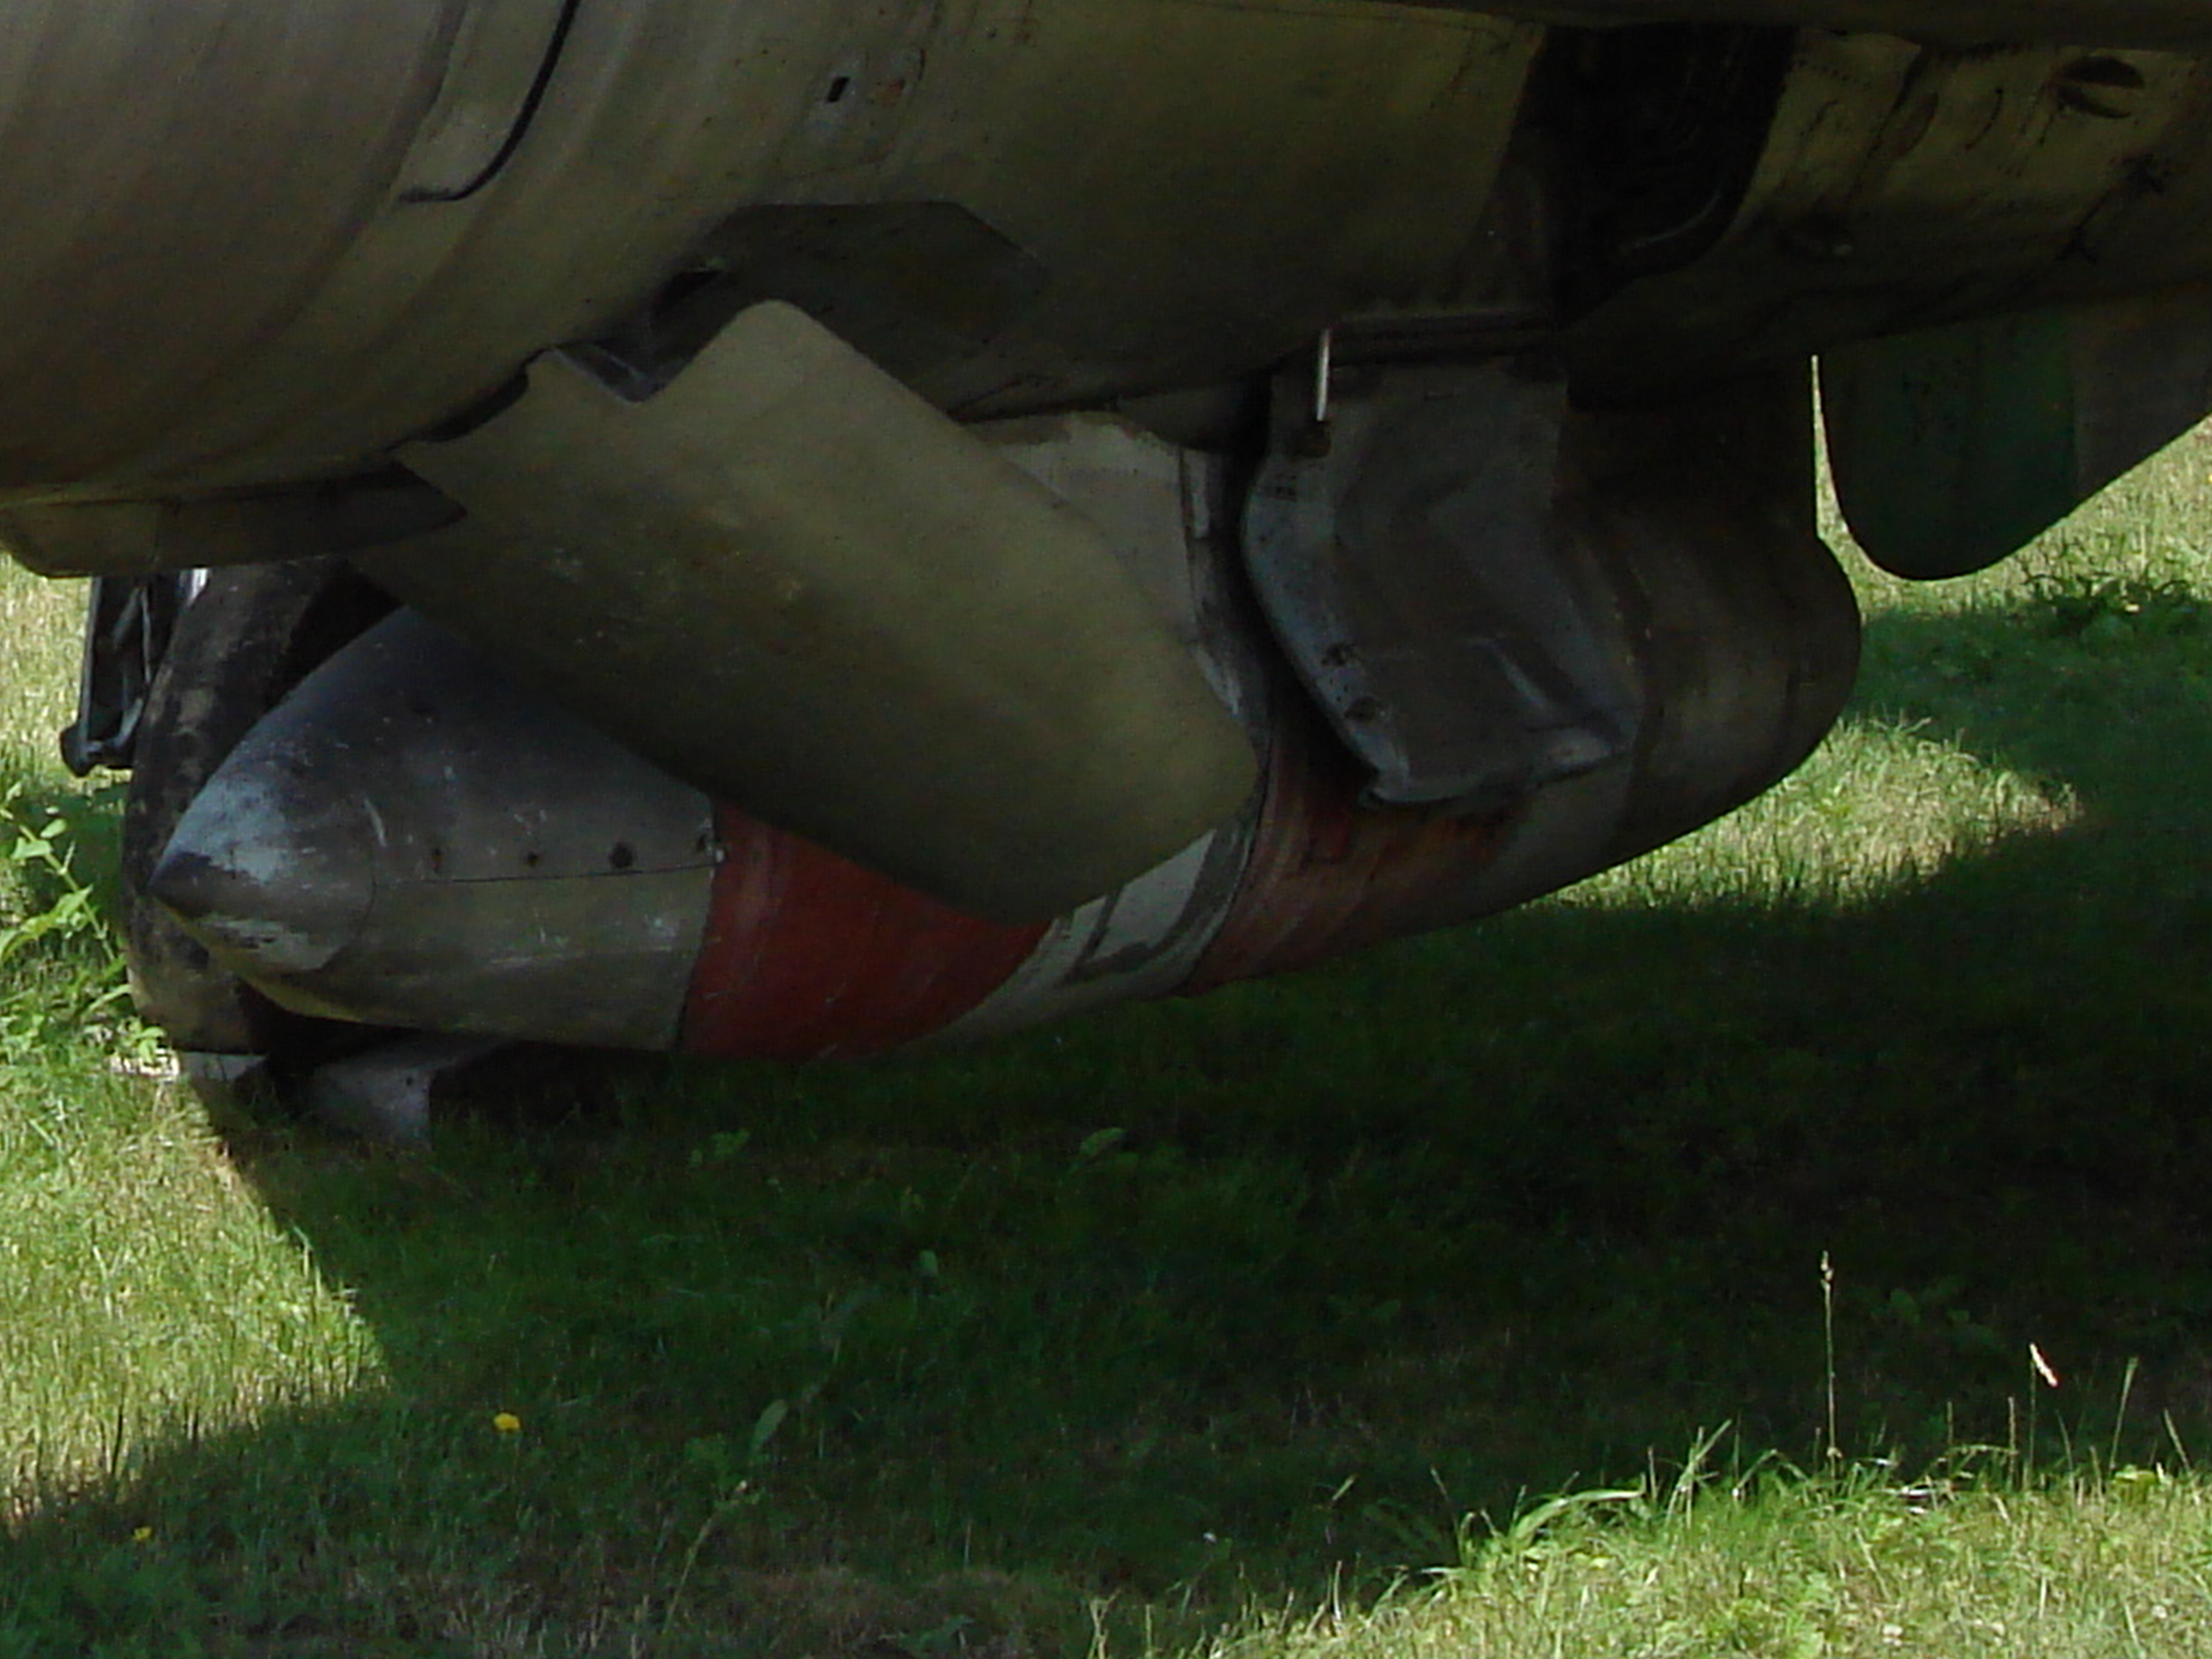 MiG-21 R nb 1125. Zasobnik rozpoznawczy Typu R. 2007 rok. Zdjęcie Karol Placha Hetman